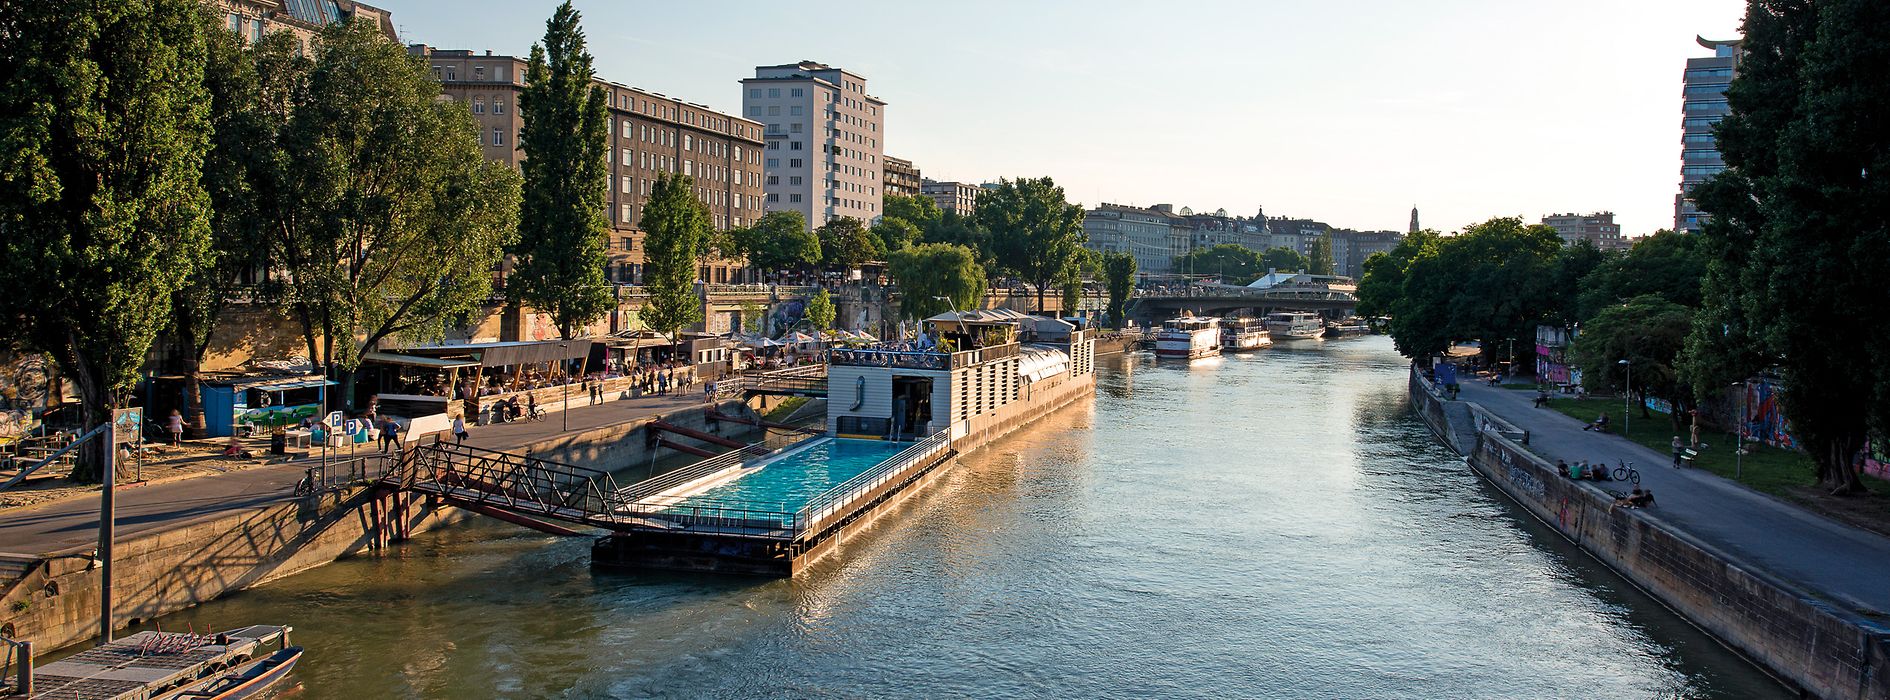 Корабль-бассейн на Дунайском канале в солнечном свете